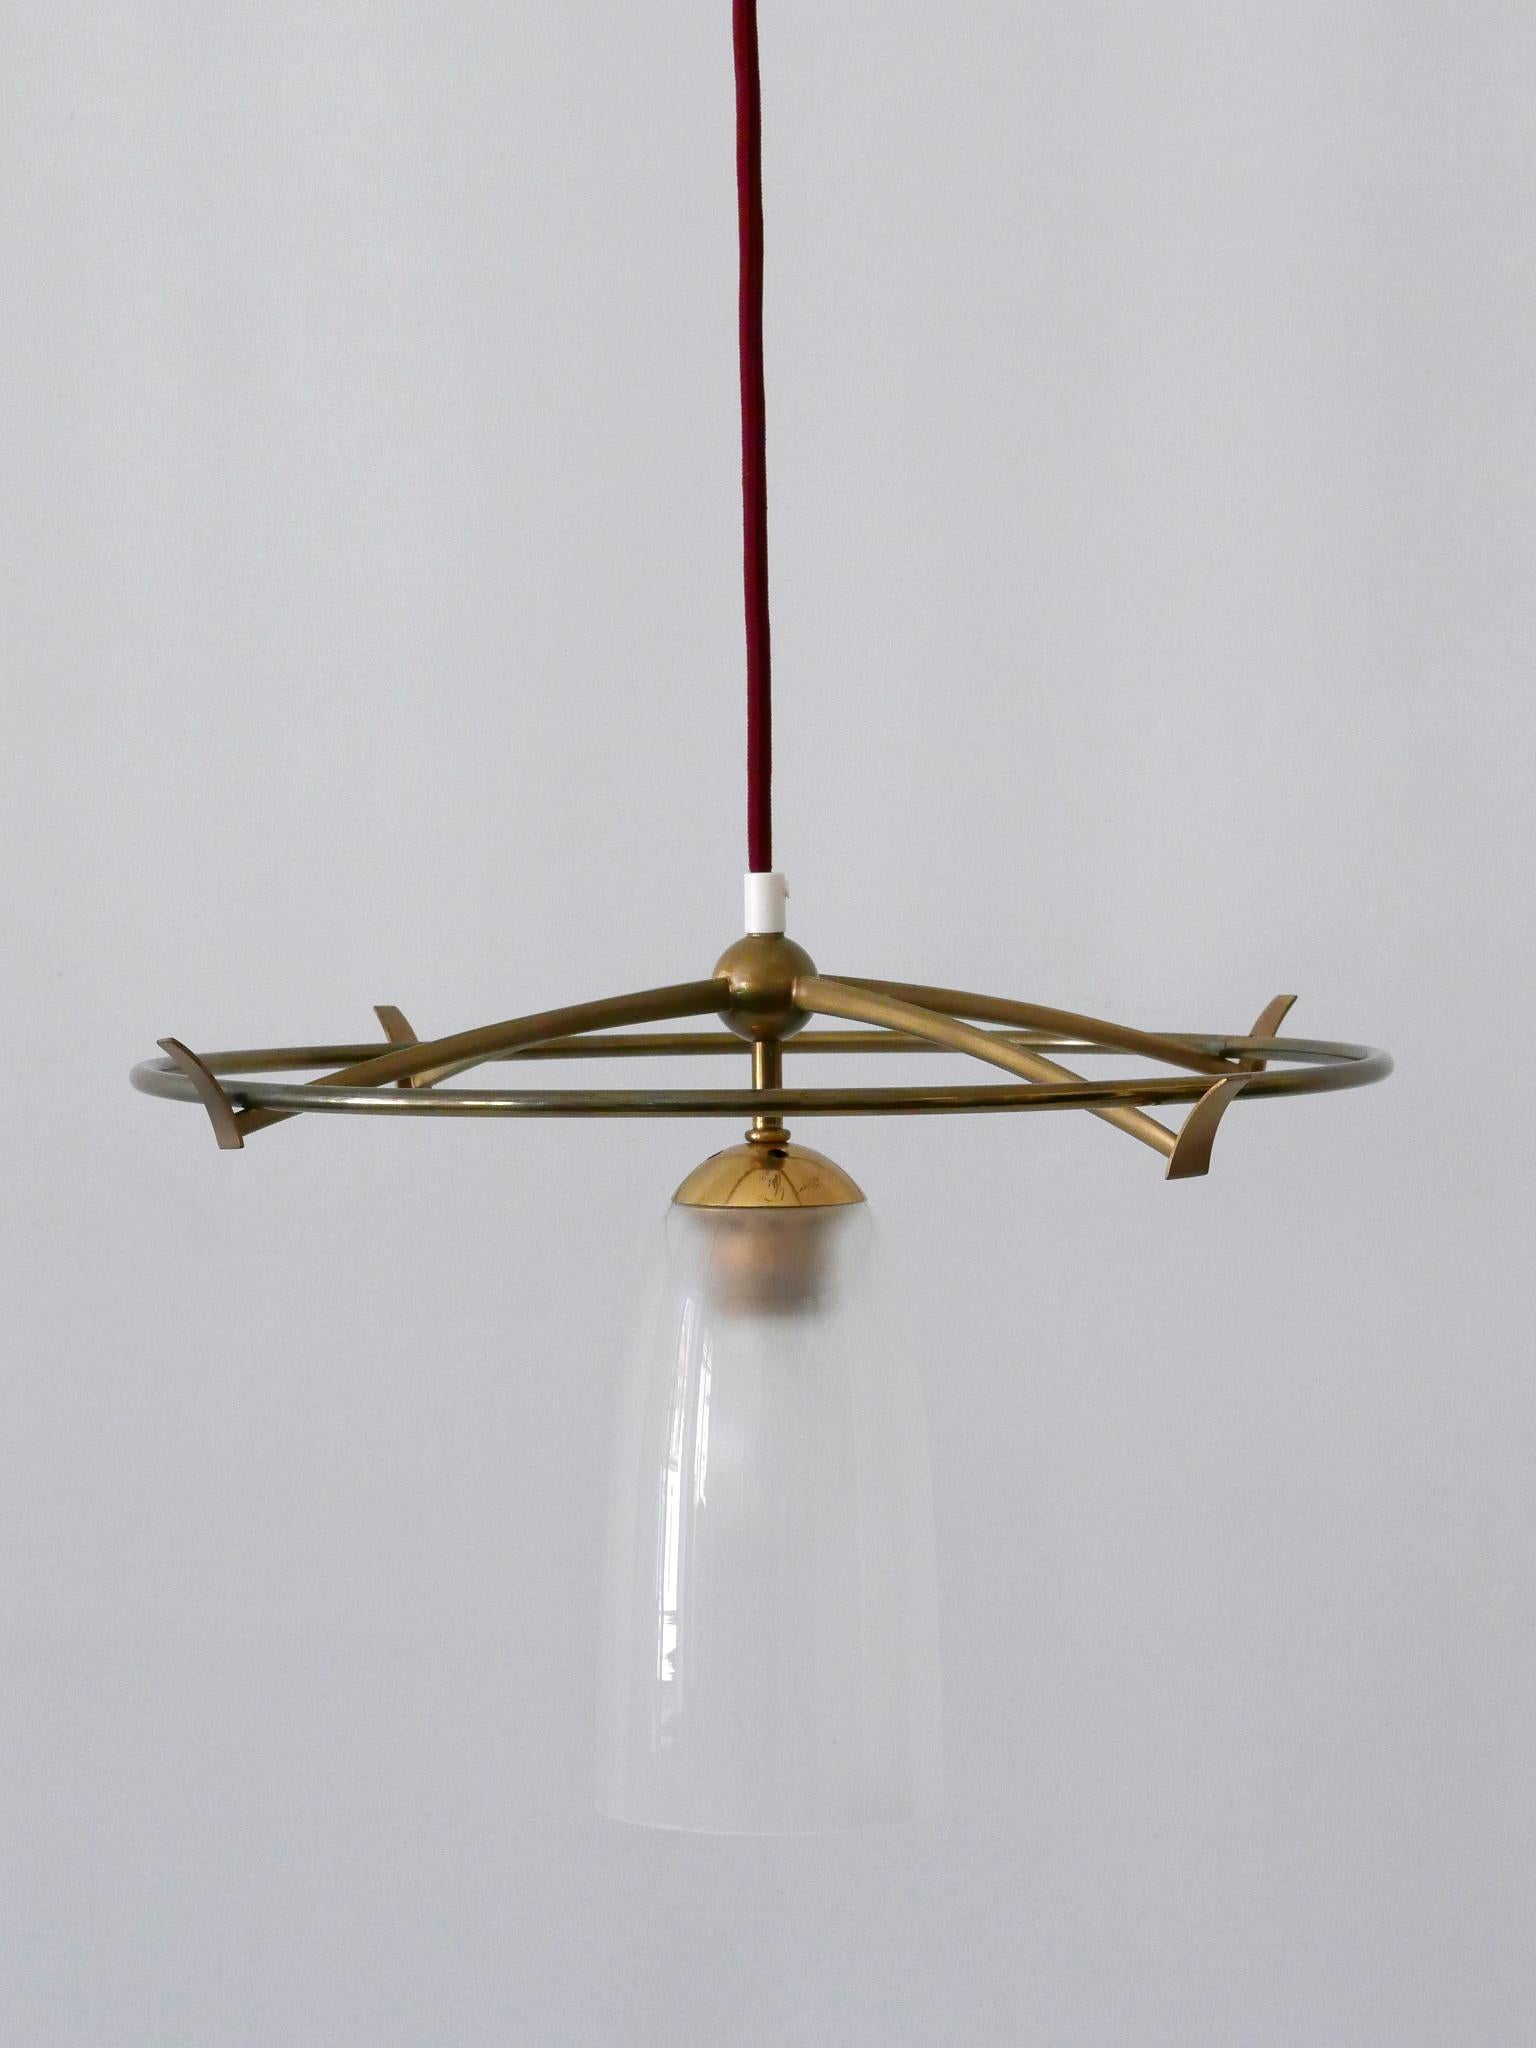 Extrêmement rare et élégante lampe pendante ou lampe à suspendre UFO de l'ère spatiale. Conçu et fabriqué probablement en Allemagne, dans les années 1950.

Réalisée en laiton et en verre laiteux, la lampe est livrée avec un porte-ampoule à vis